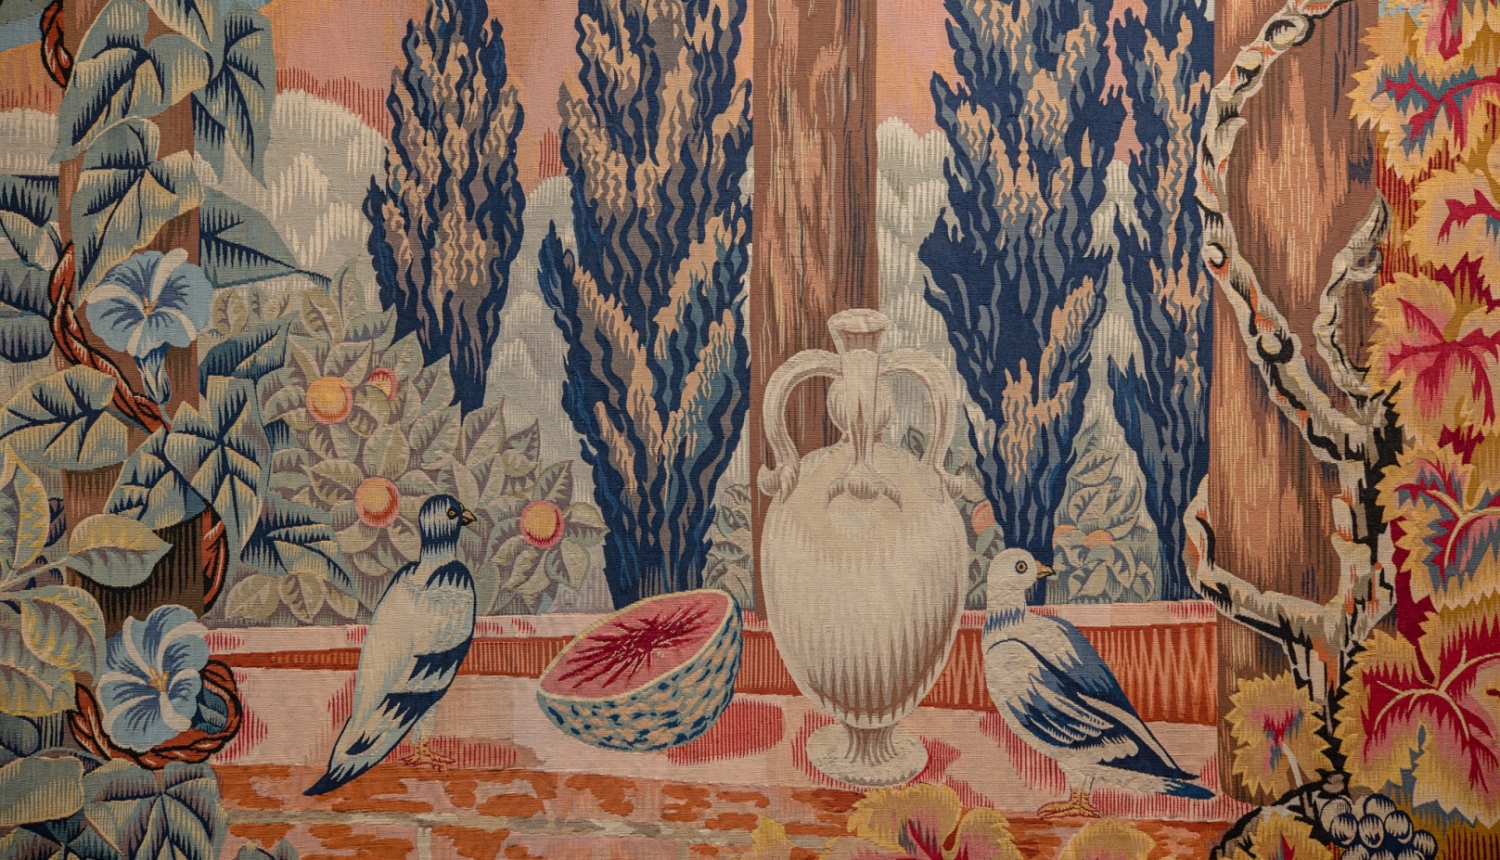 Fragments no gobelēna "Toskānas dārzs". Pjērs Dibreijs (1891-1970). Obisonas austuve. Mobilier national kolekcija. Foto - Ingus Bajārs